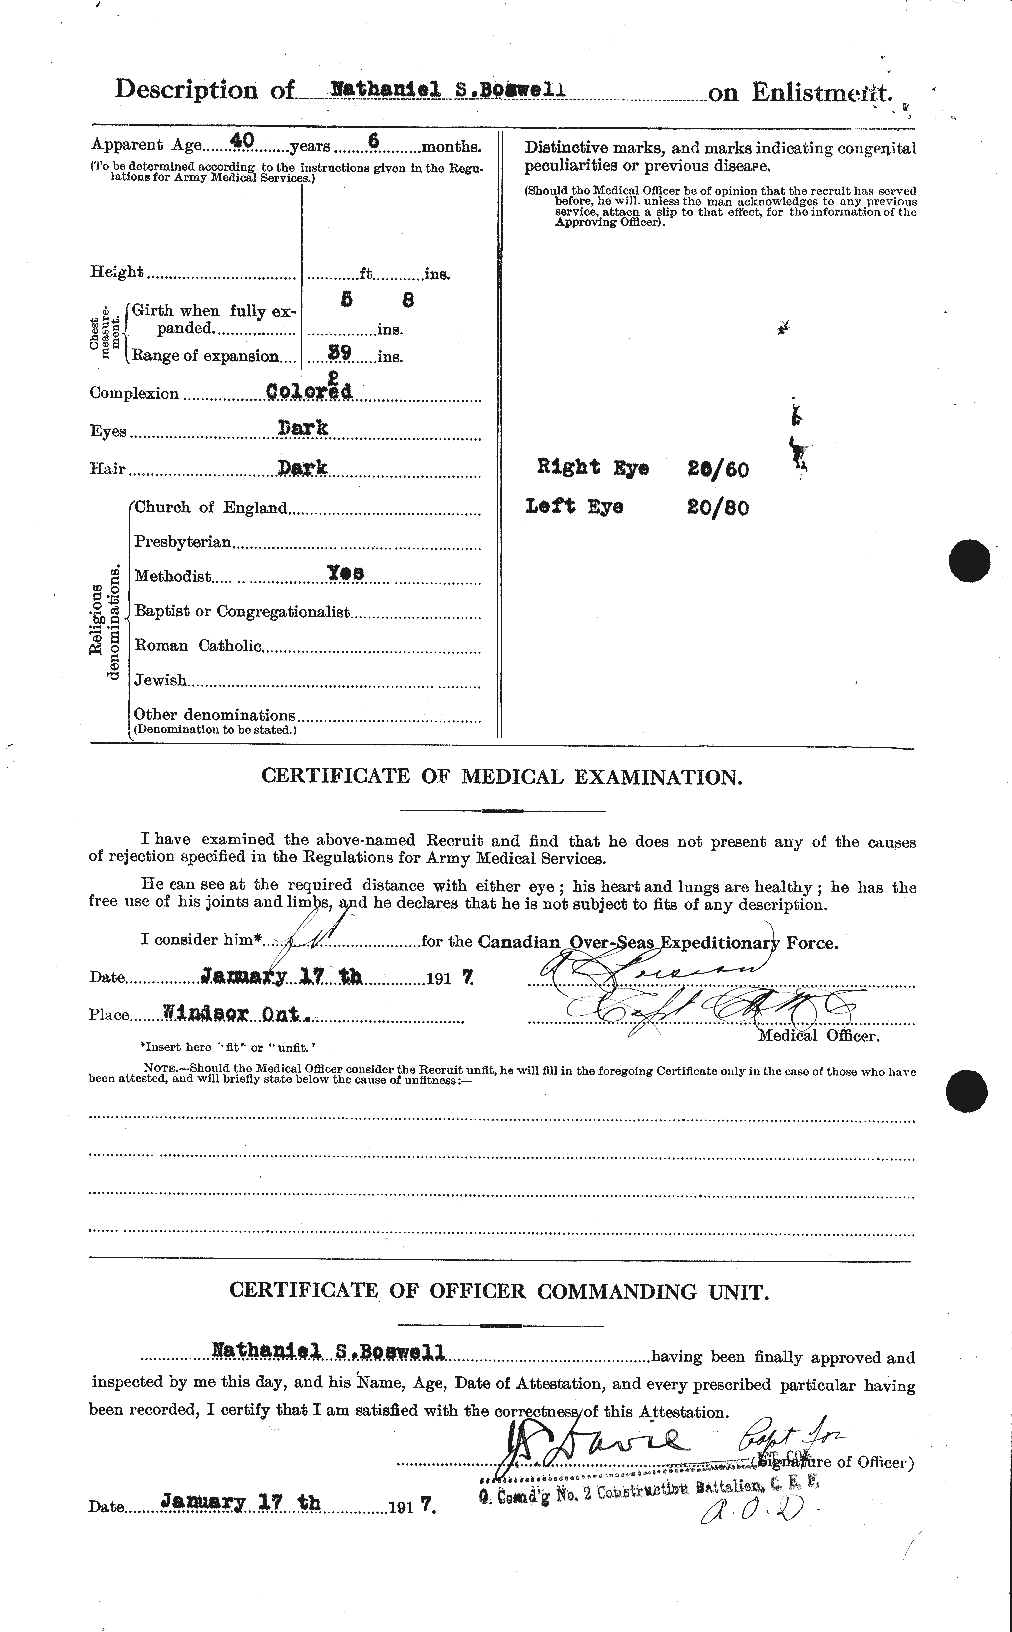 Dossiers du Personnel de la Première Guerre mondiale - CEC 251950b